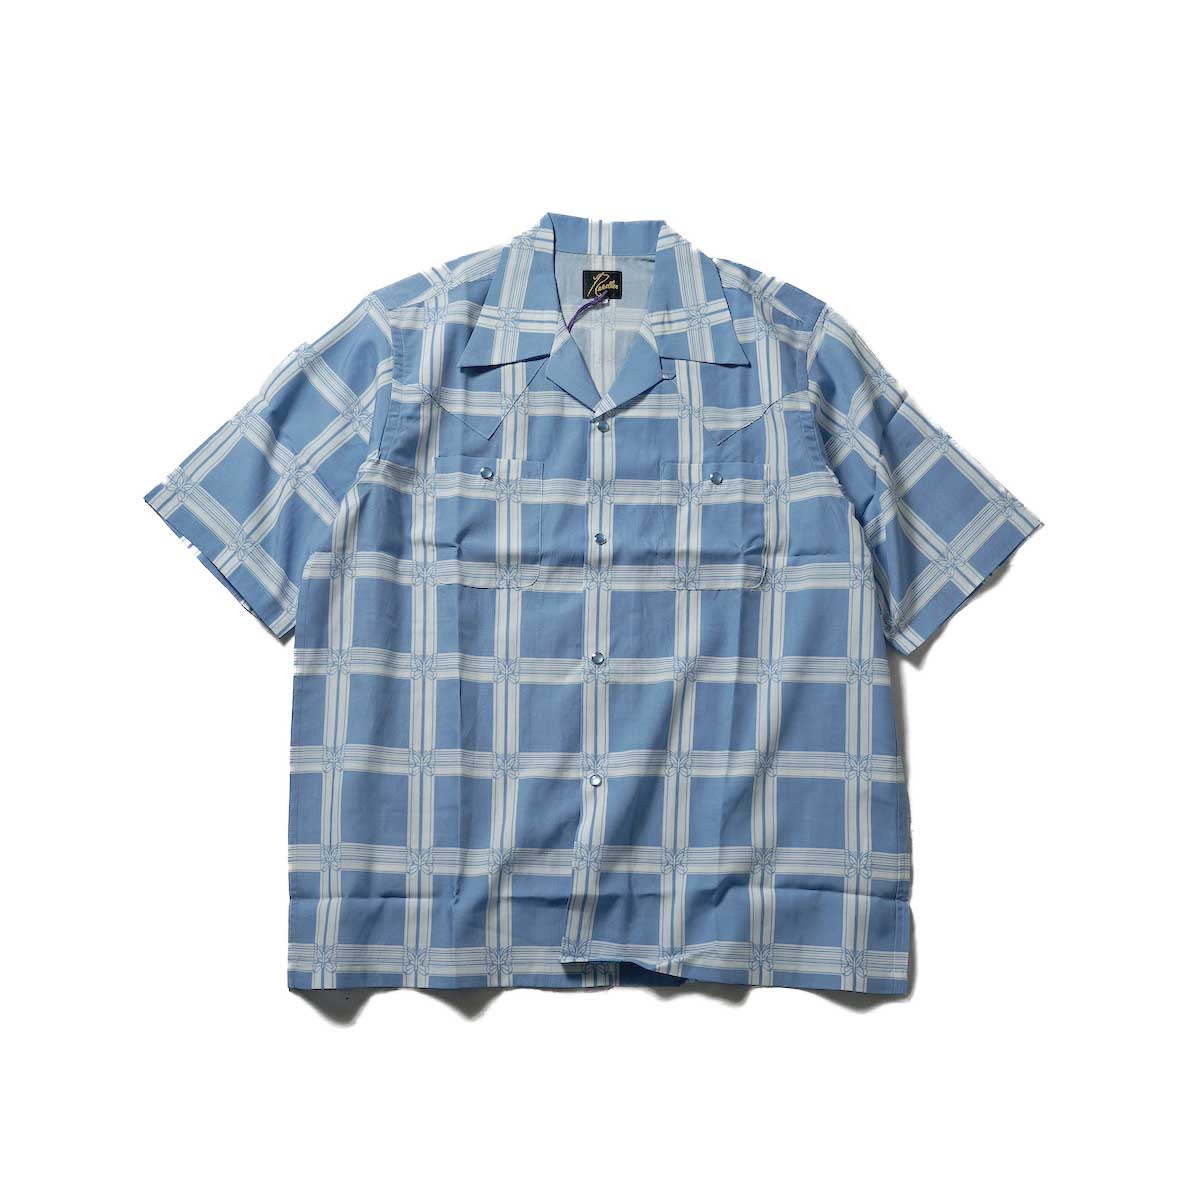 Needles / S/S Cowboy One-Up Shirt - R/C Lawn Cloth / Papillon Plaid(Blue)